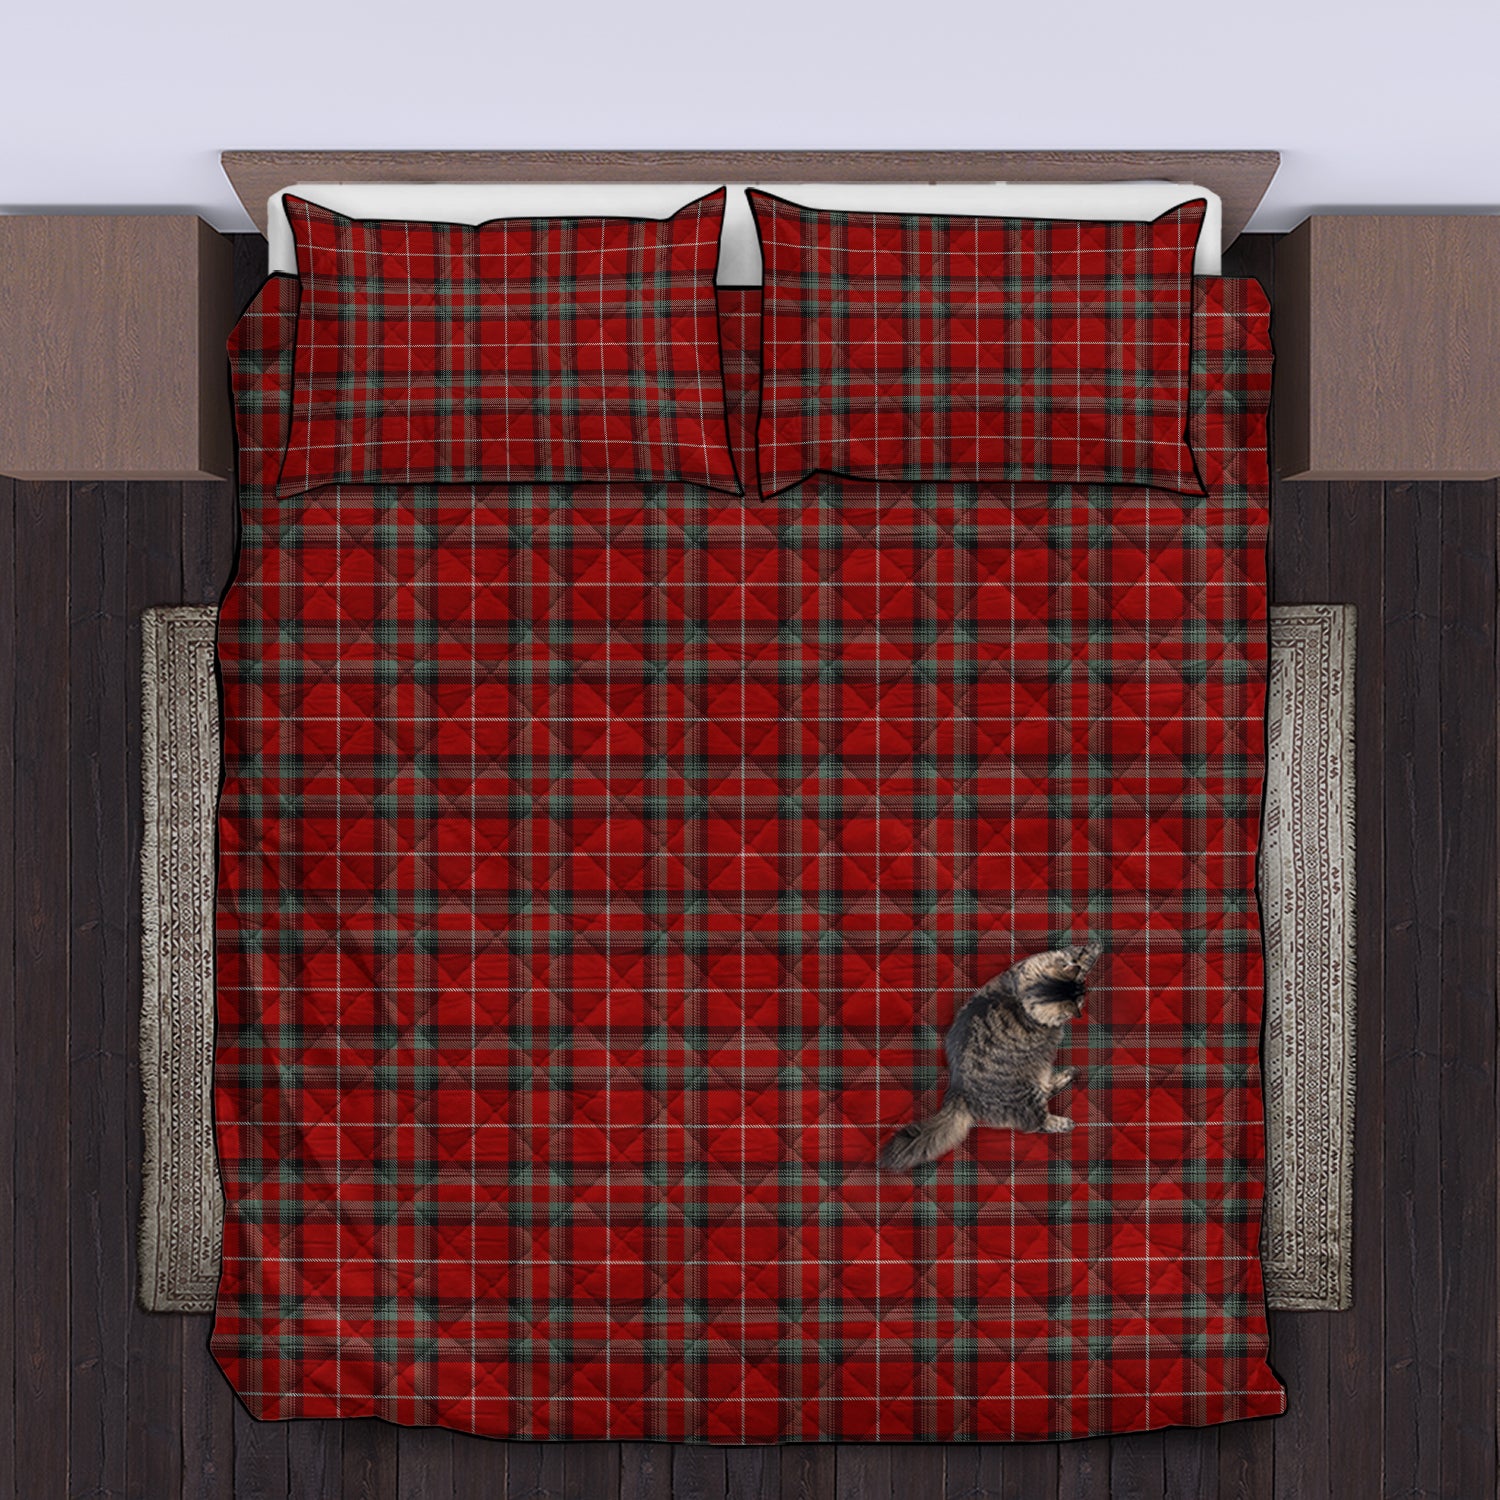 stuart-of-bute-tartan-quilt-bed-set